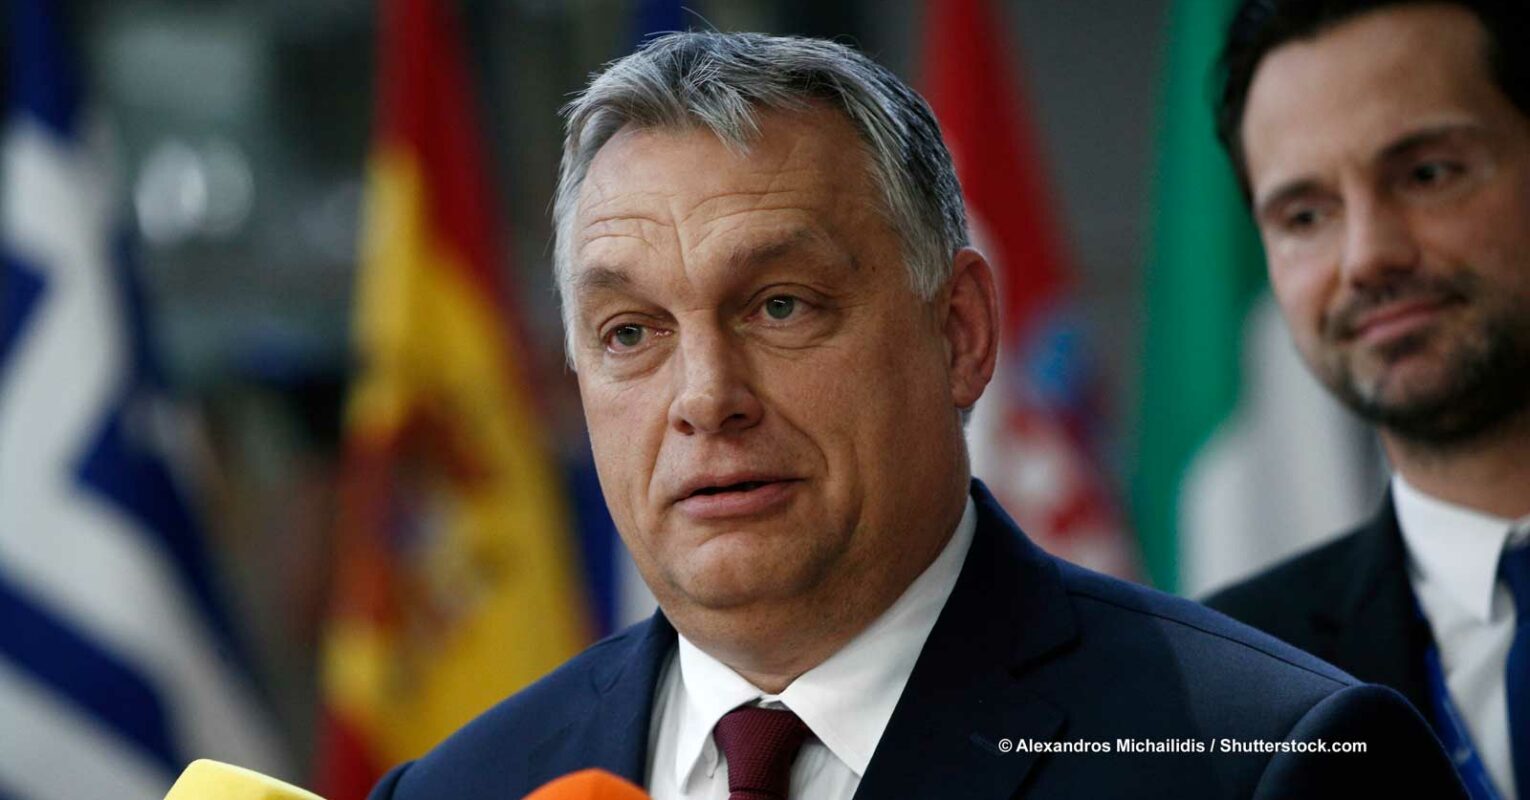 Inflation in Ungarn: Orbán setzt Preisbremse für bestimmte Lebensmittel